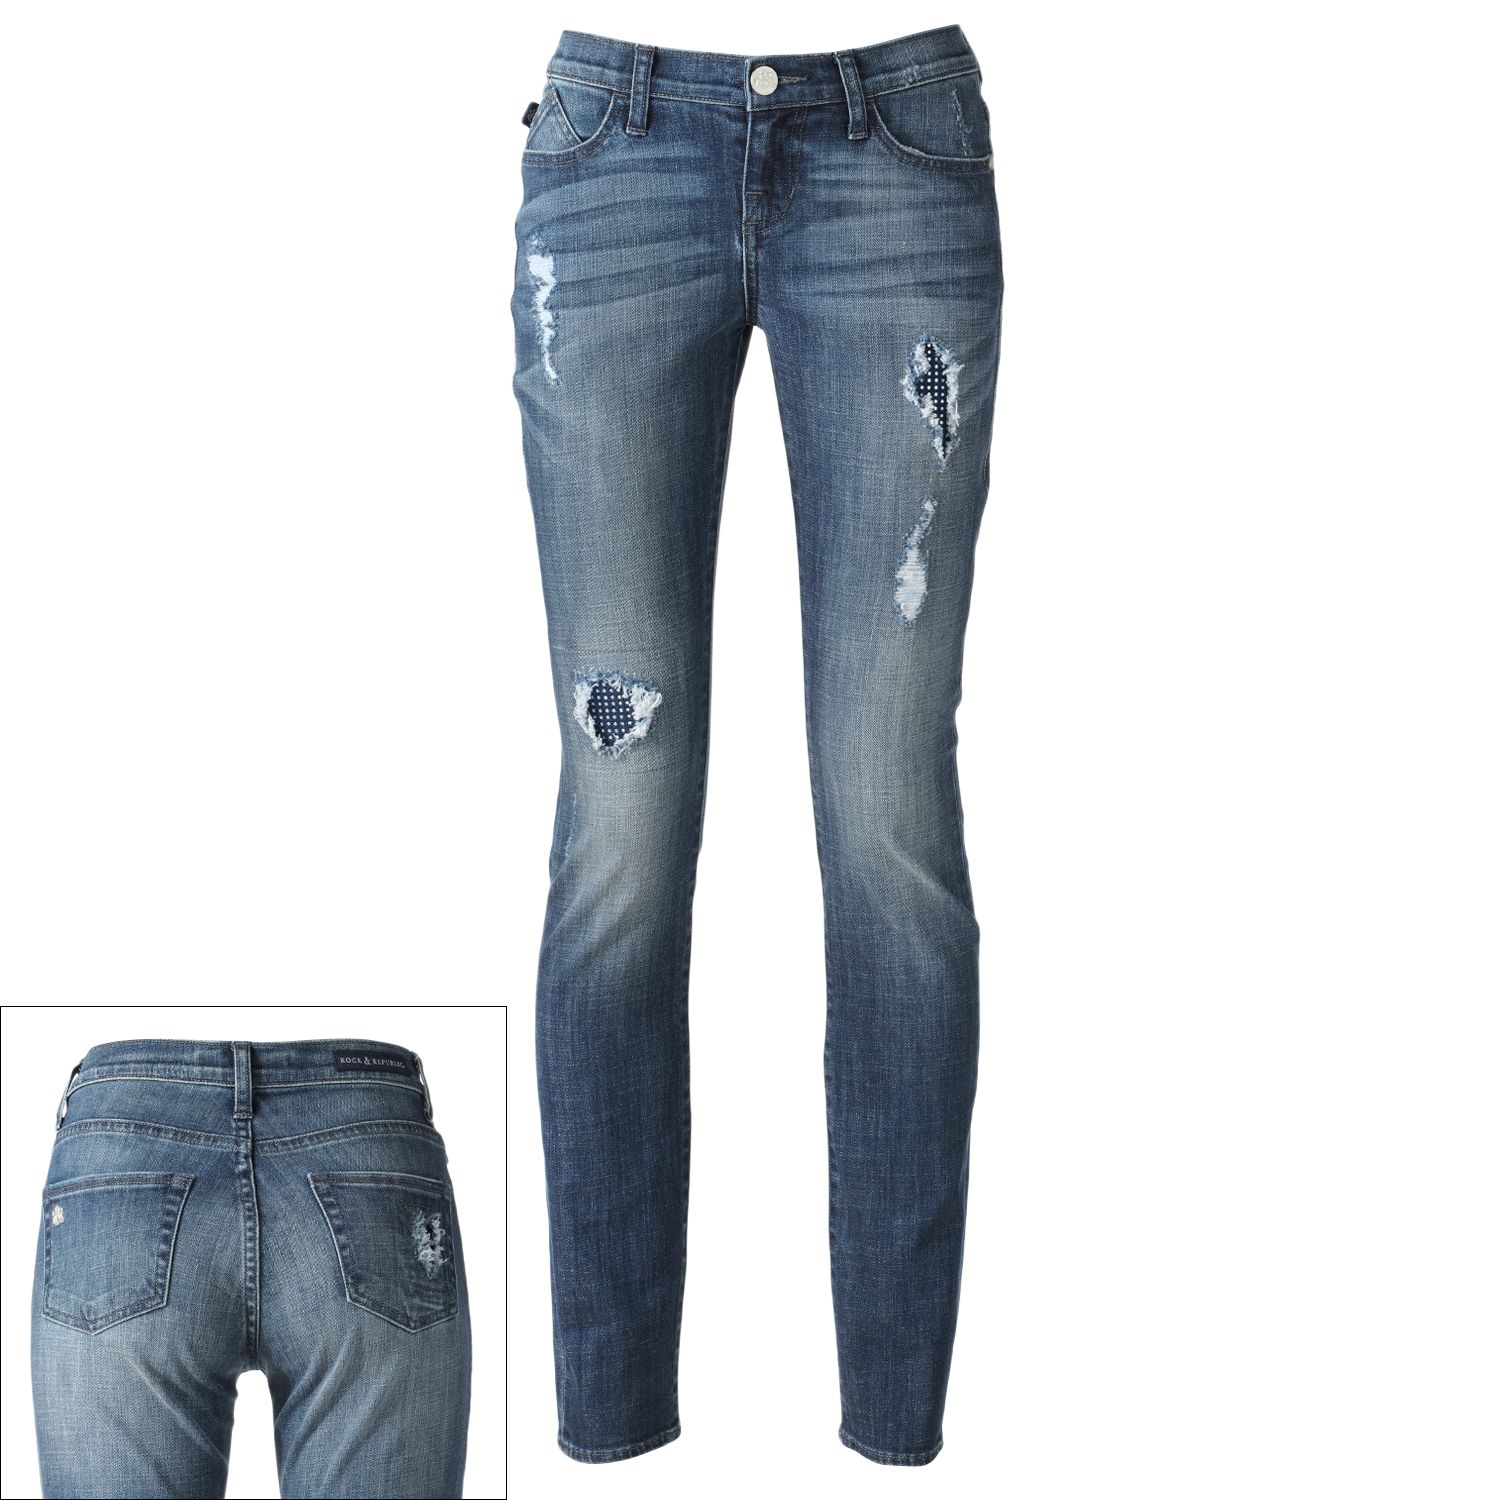 rock & republic skinny jeans